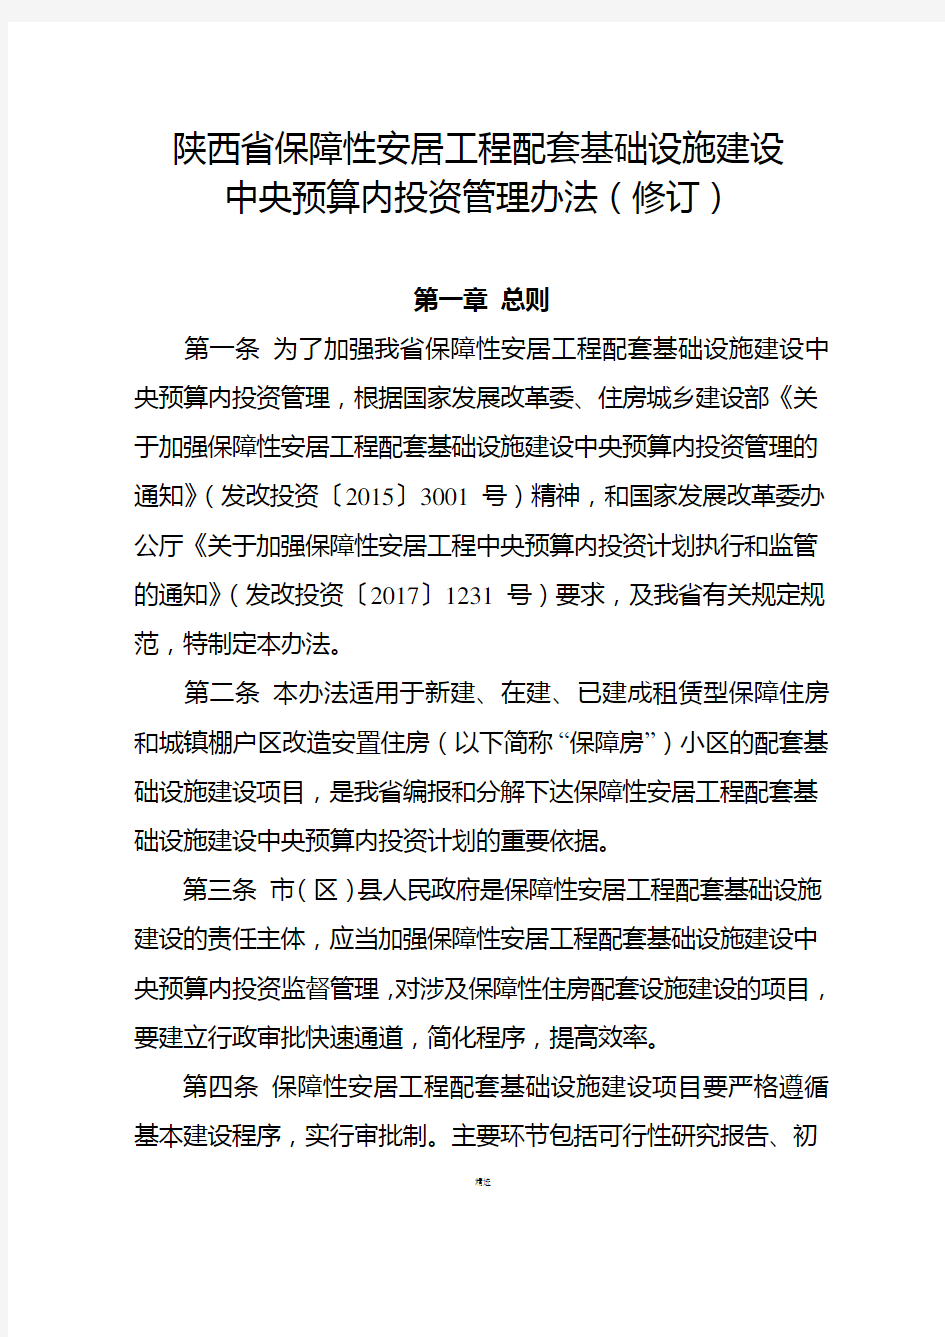 陕西省保障性安居工程配套基础设施建设中央预算内投资管理办法(修订)